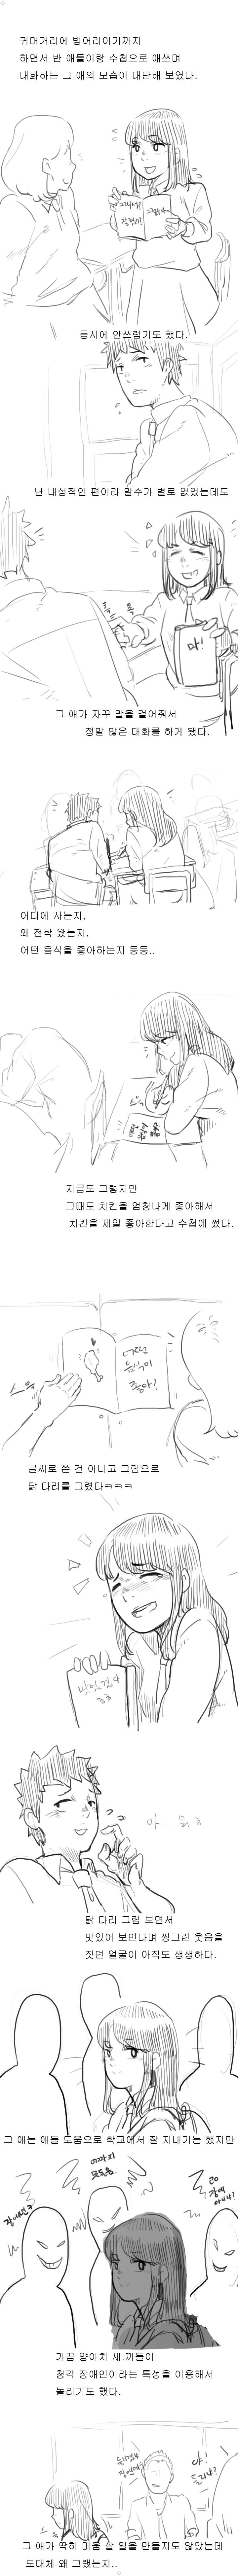 추억의 청각장애인 처자애랑 짝이었던 썰만화 ㅎㅎㅎㅎㅎ 이미지 #4